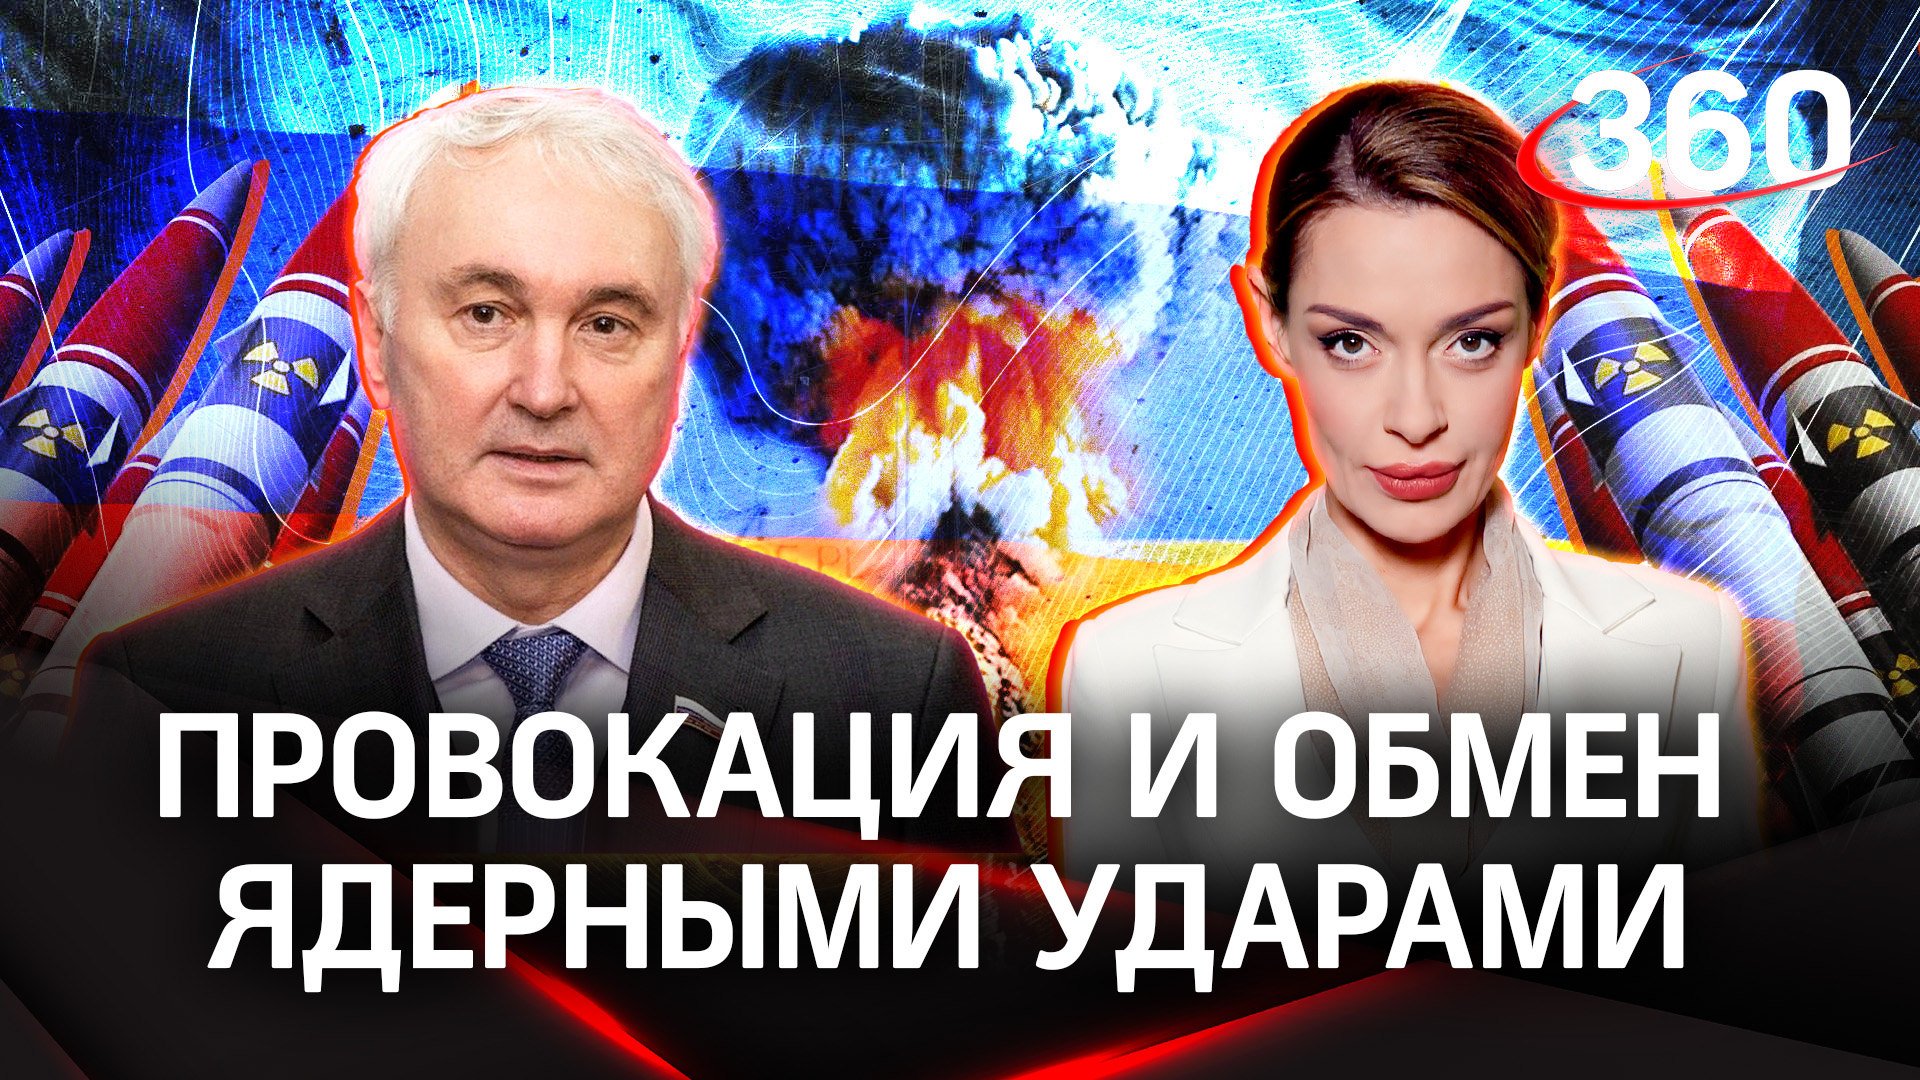 К чему может привести провокация и обмен ядерными ударами | Андрей Картаполов и Аксинья Гурьянова